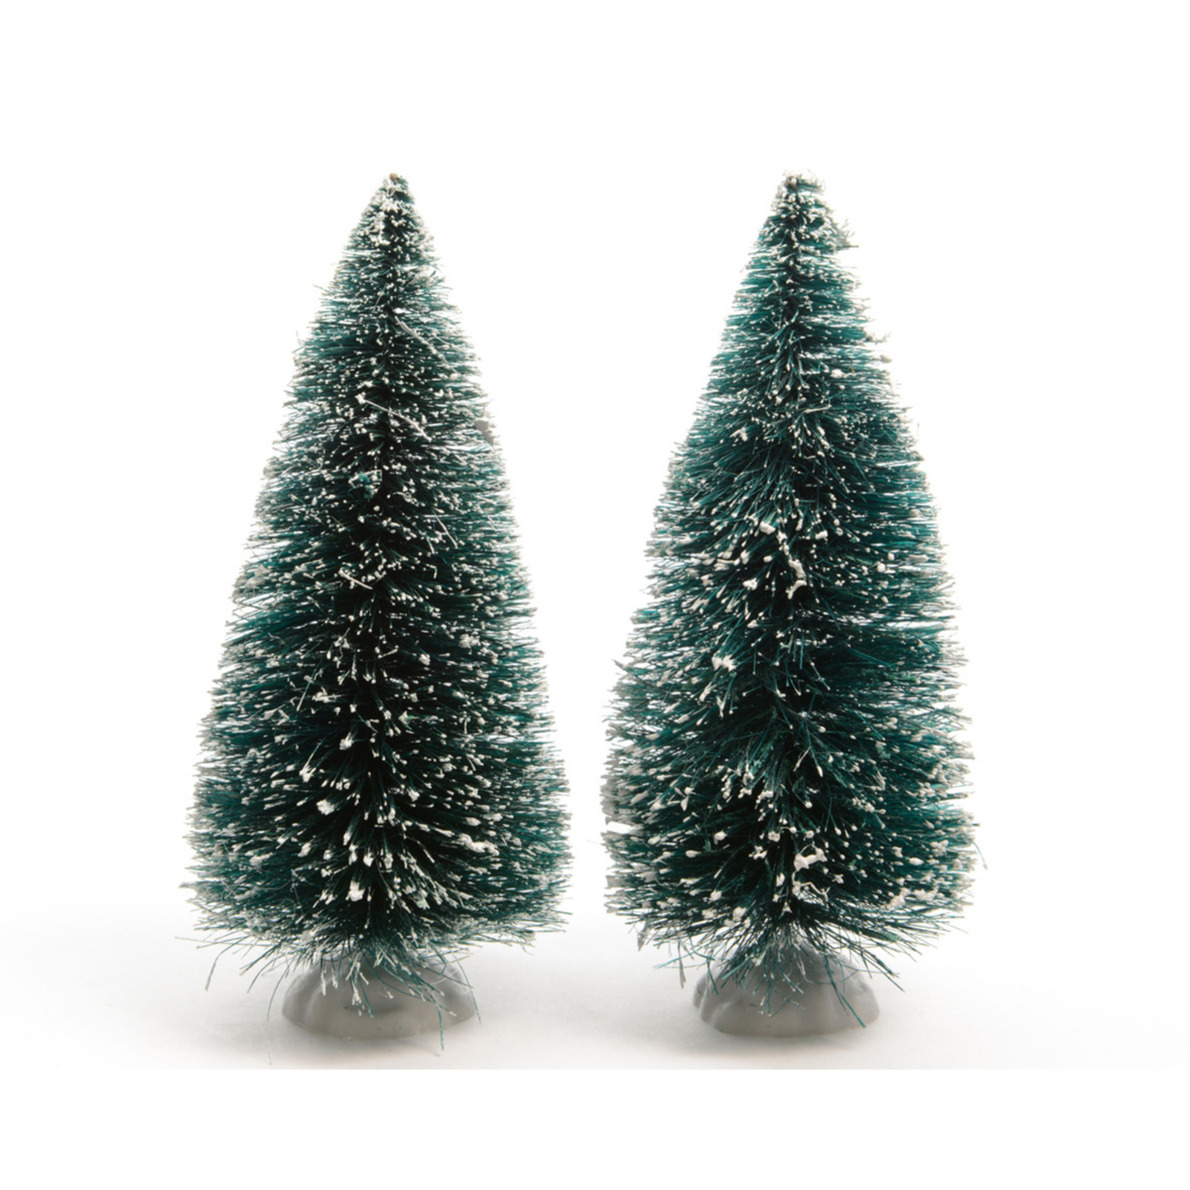 4x stuks kerstdorp onderdelen miniatuur kerstbomen groen 15 cm